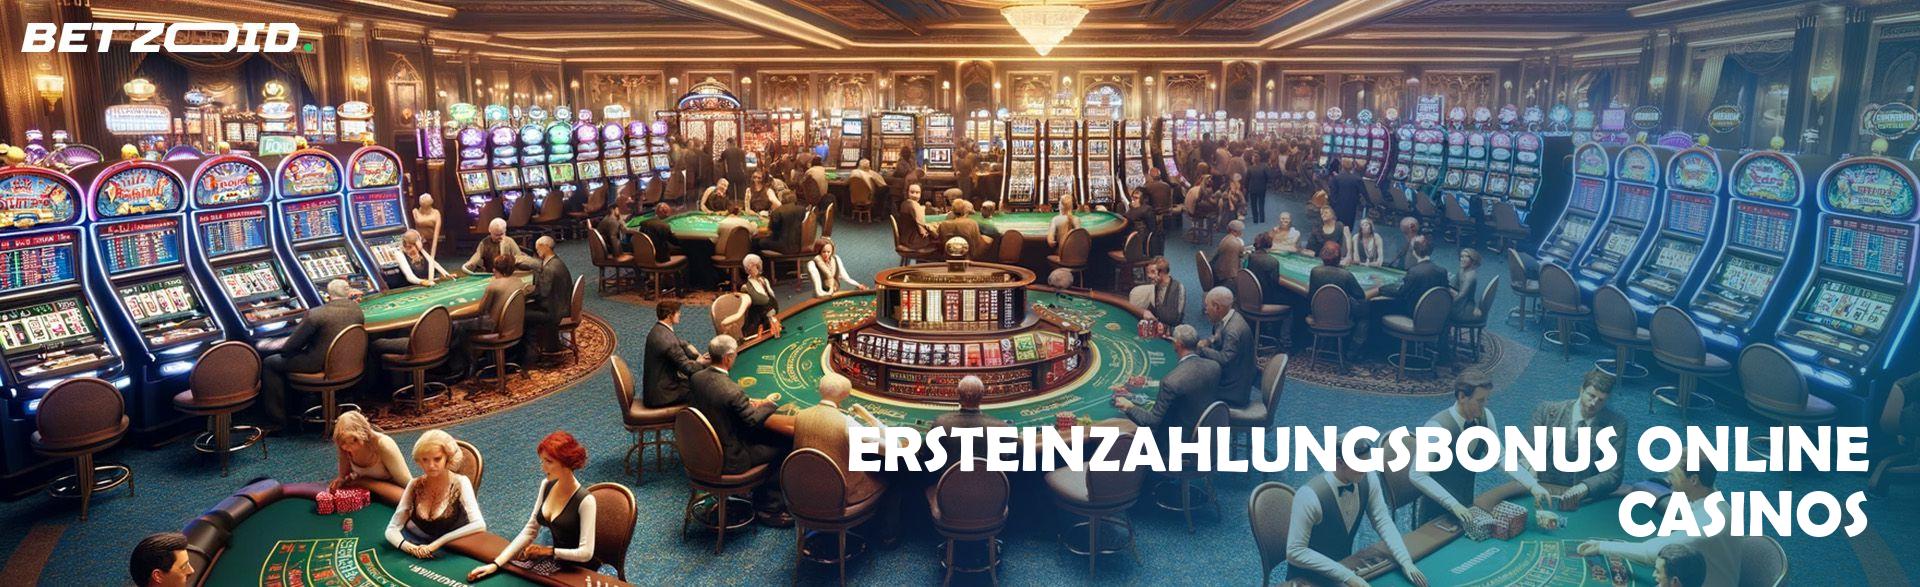 Ersteinzahlungsbonus Online Casinos.